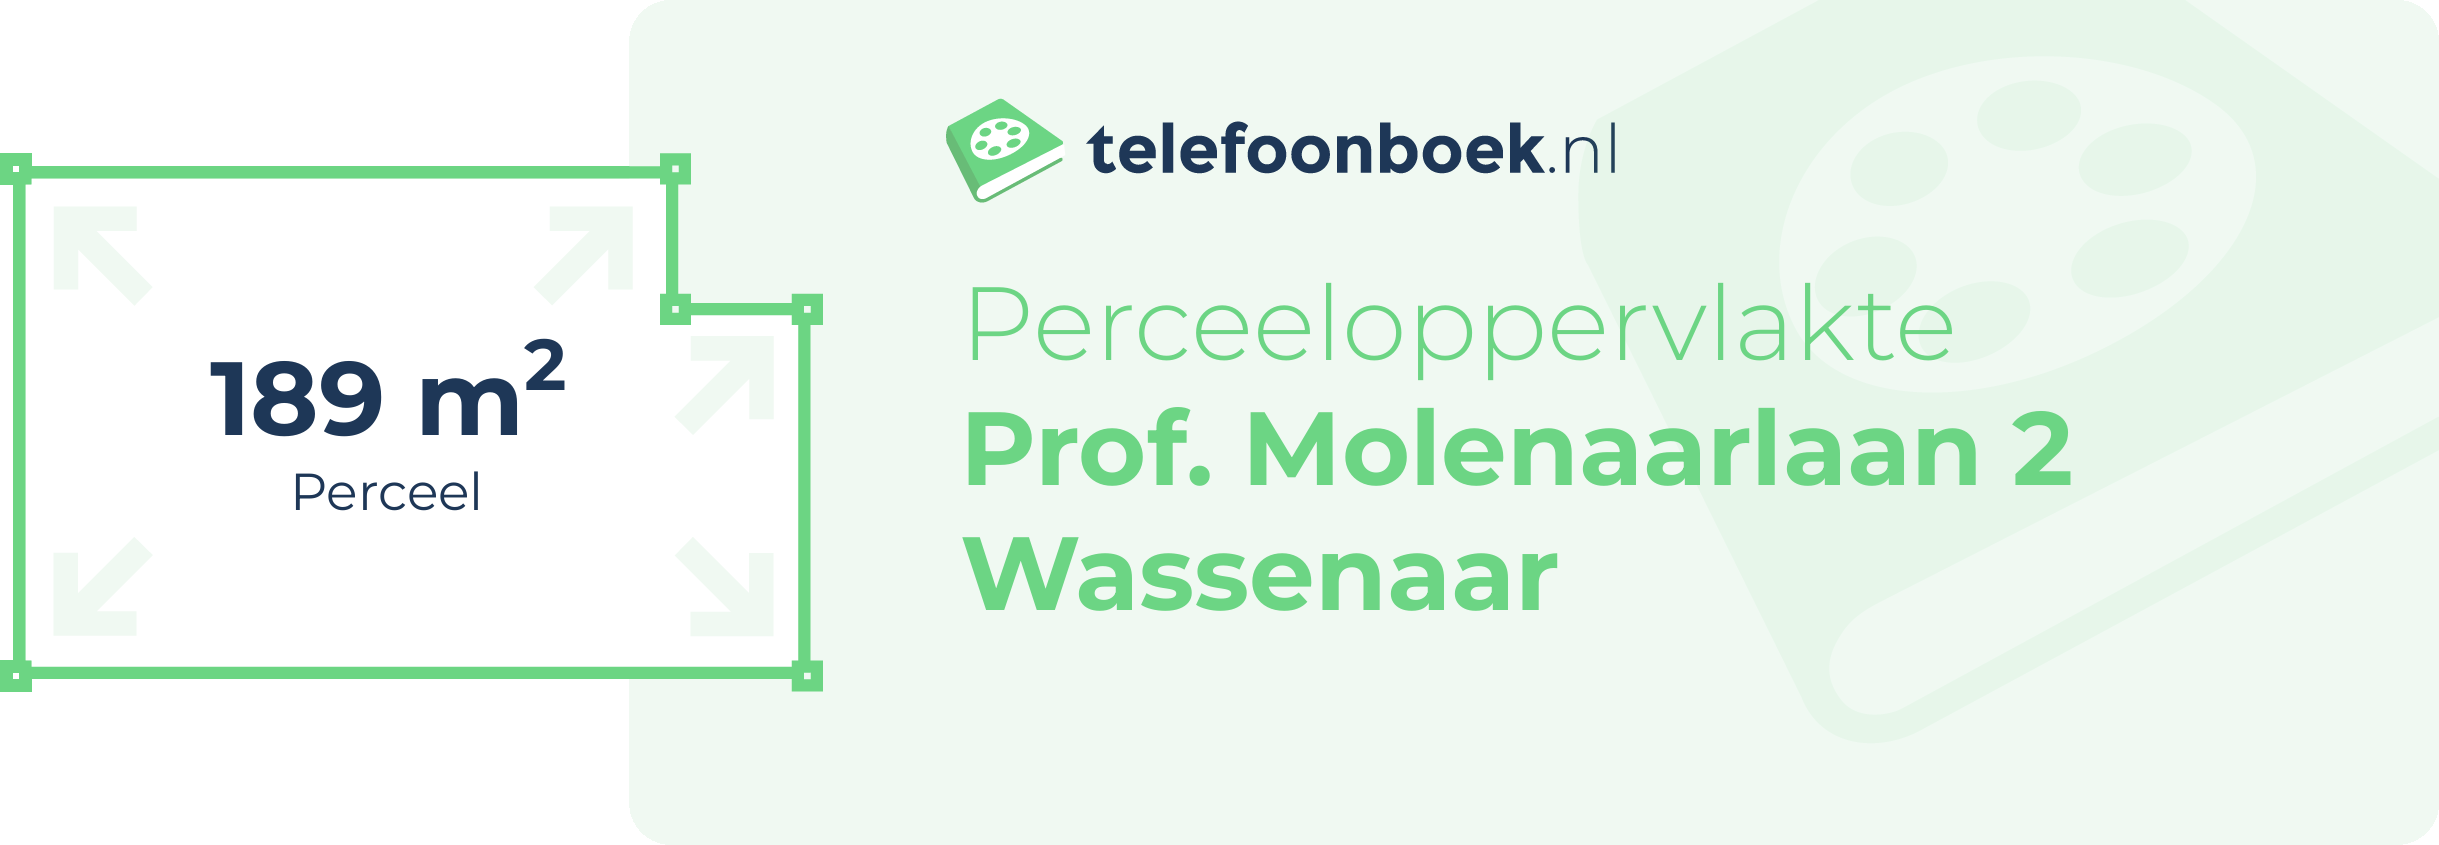 Perceeloppervlakte Prof. Molenaarlaan 2 Wassenaar